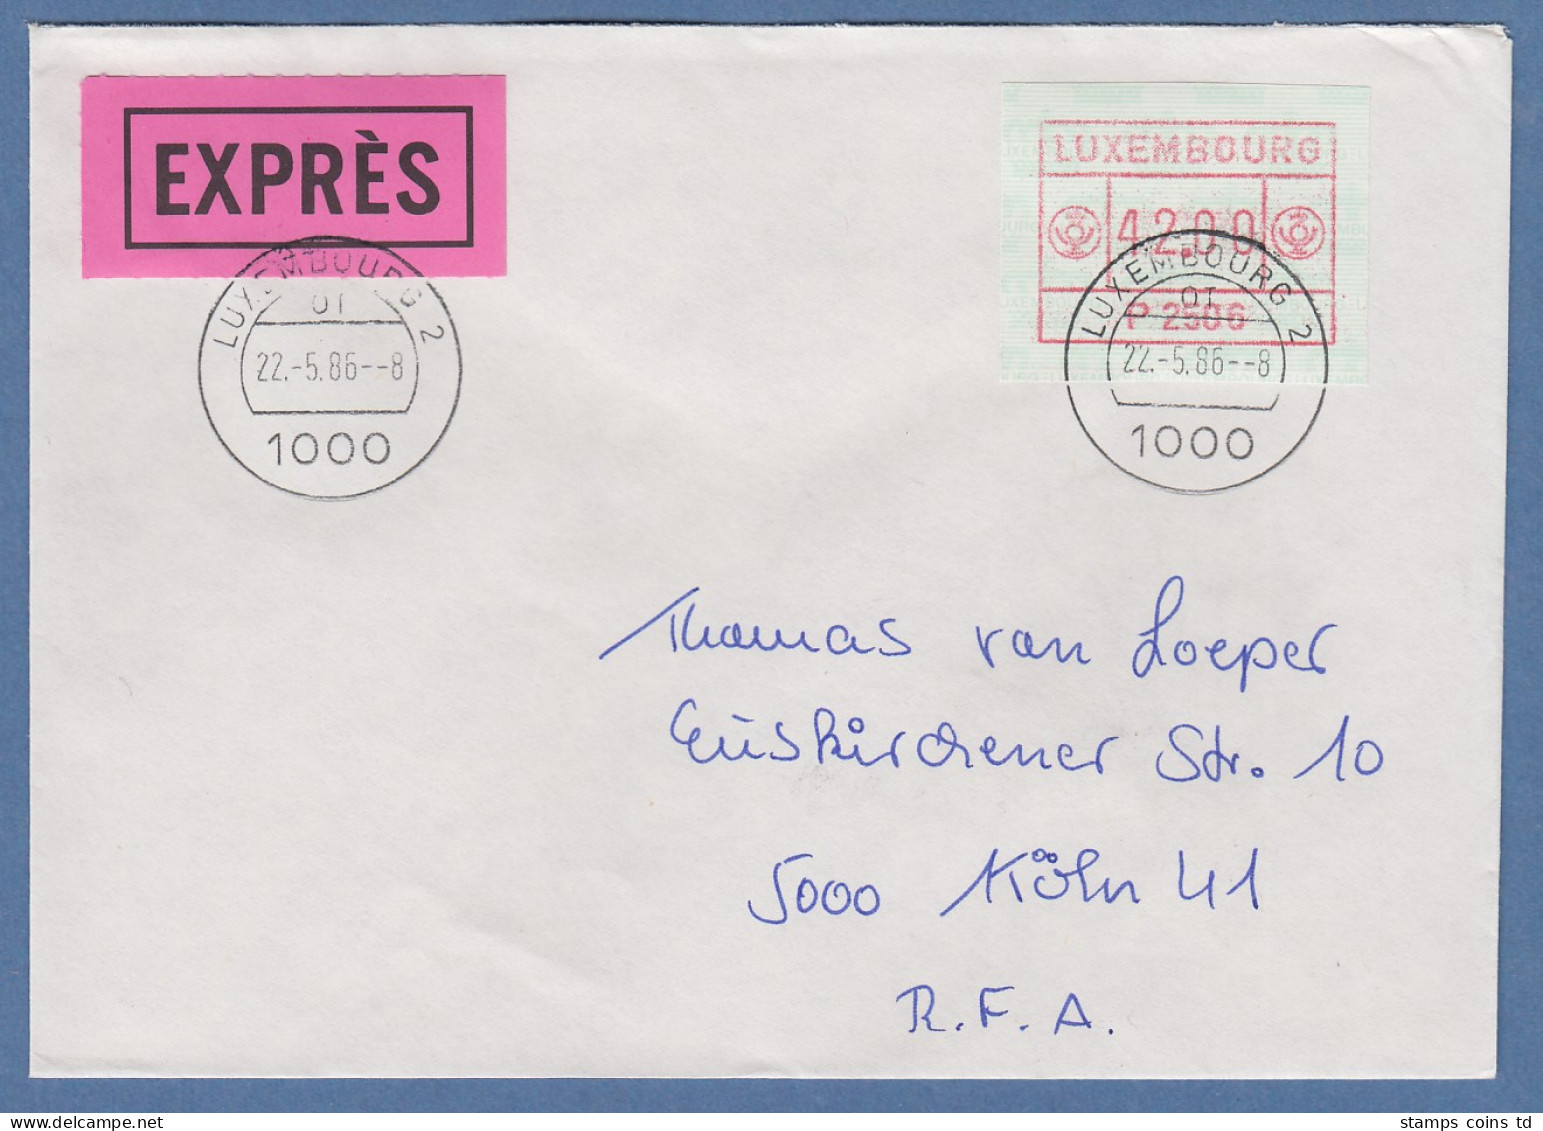 Luxemburg ATM P2506 Wert 42.00 Auf Express-FDC Nach Deutschland, O 22.5.86 - Postage Labels